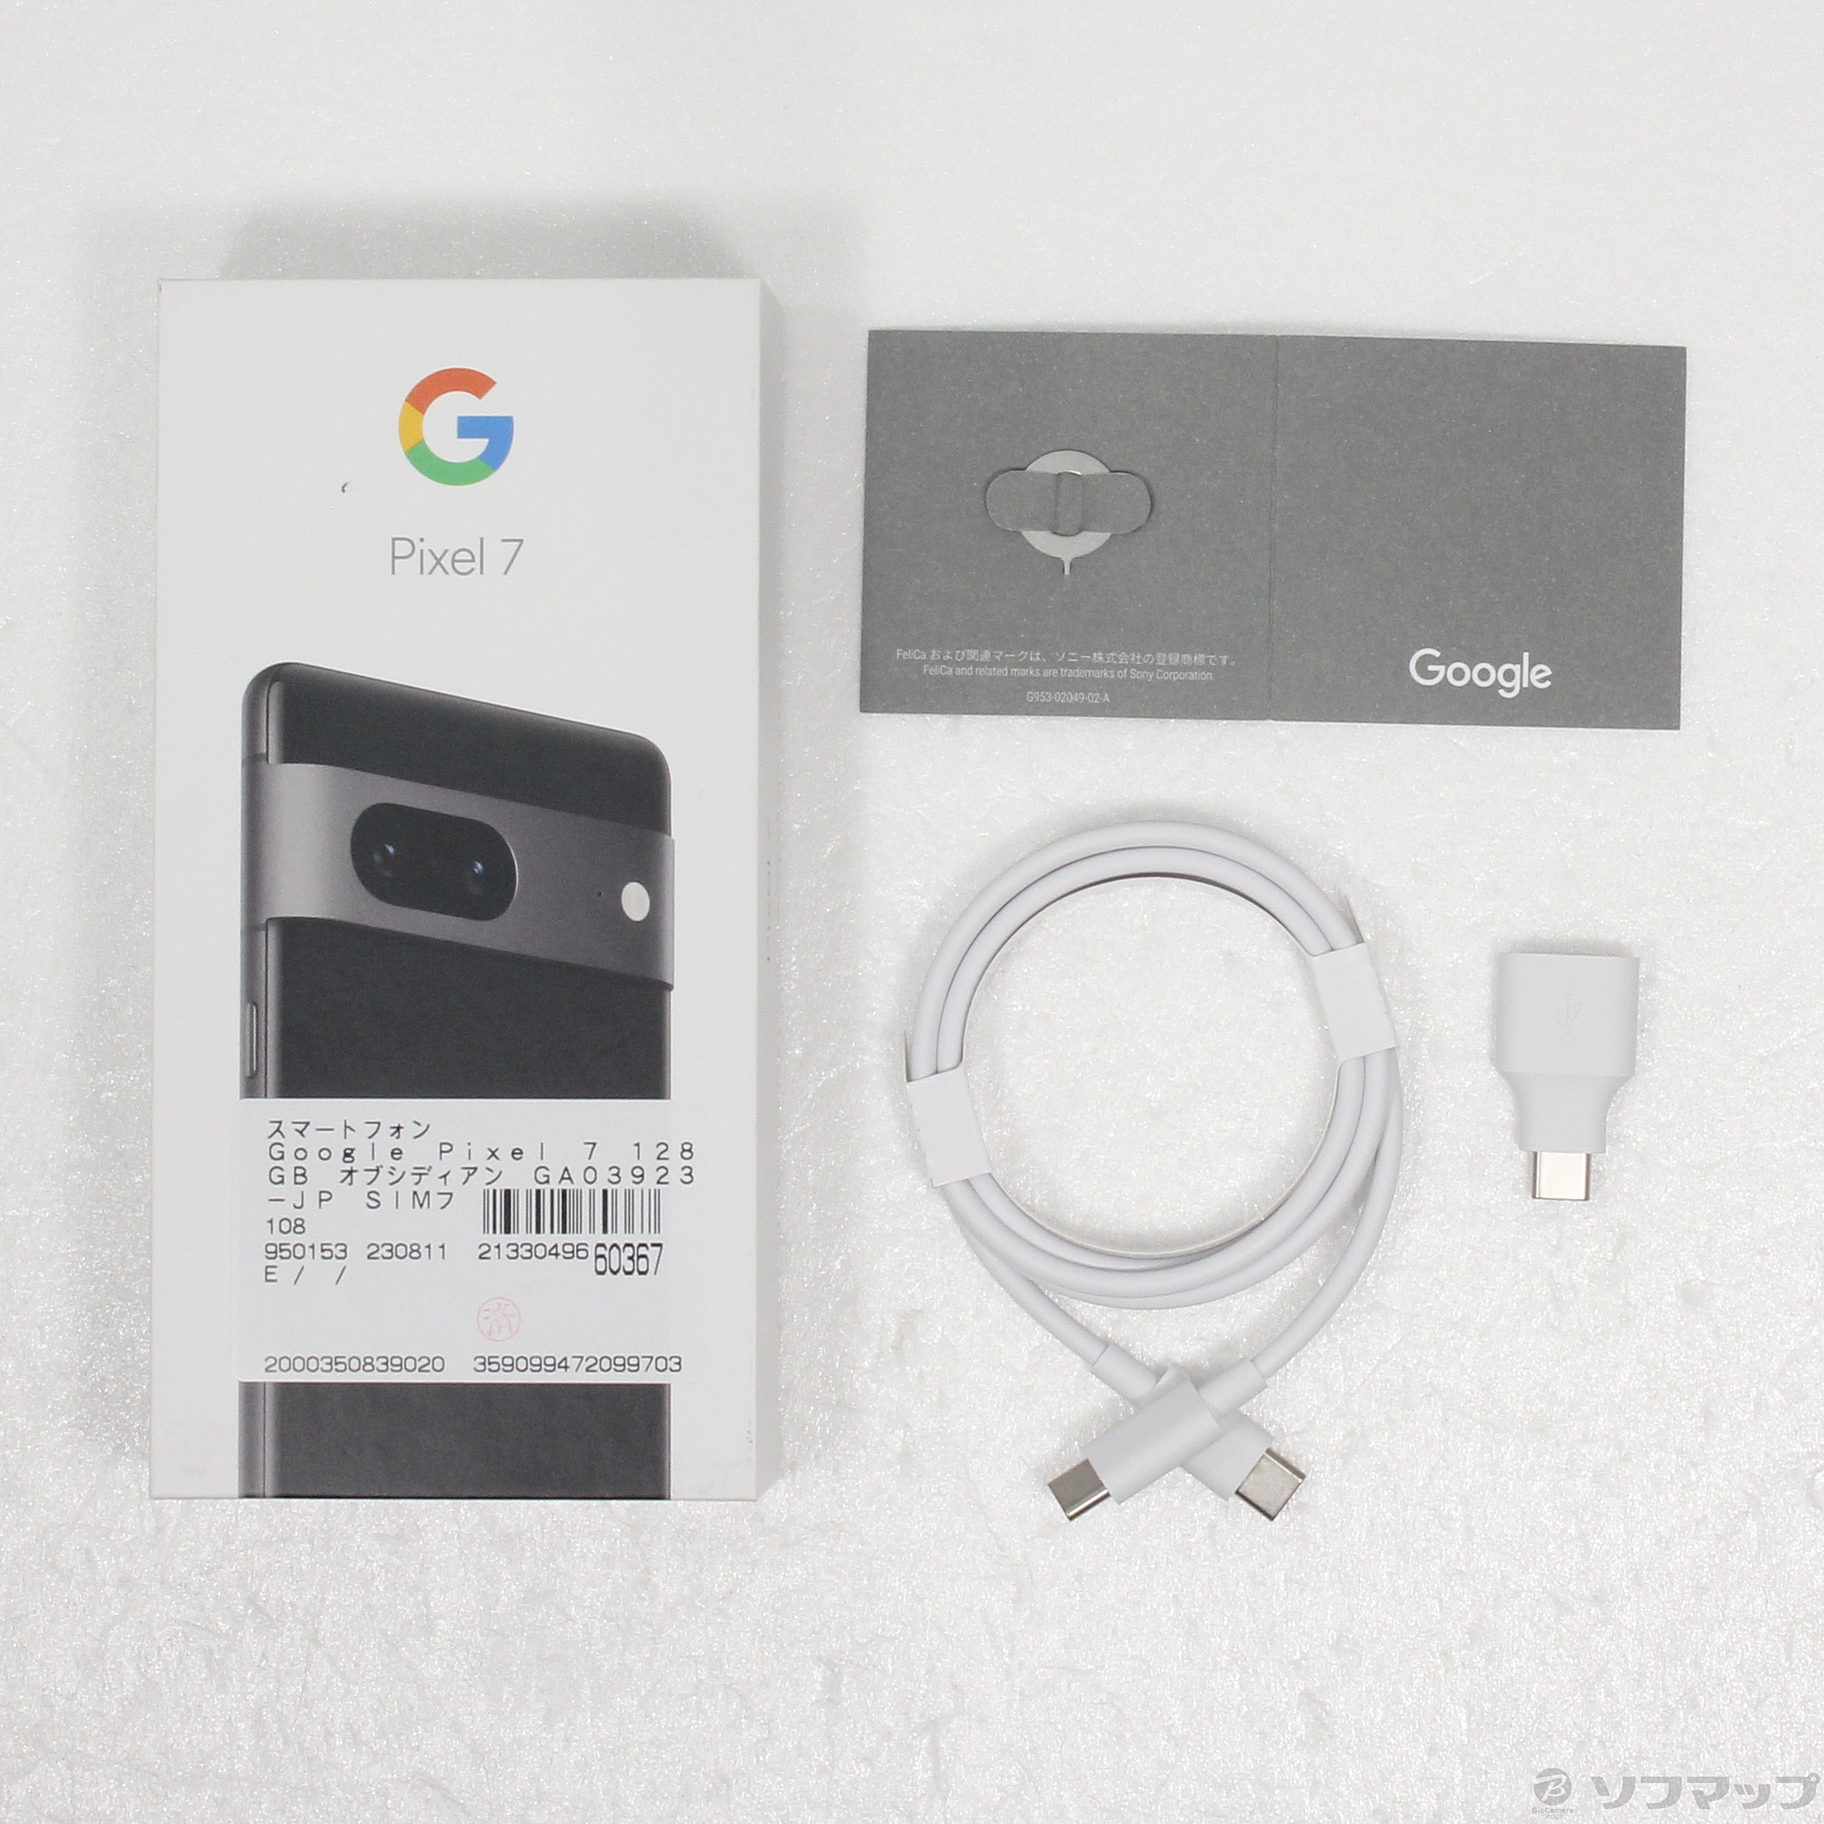 お買い得品 【中古】GOOGLE(グーグル) Google Pixel 7 128GB